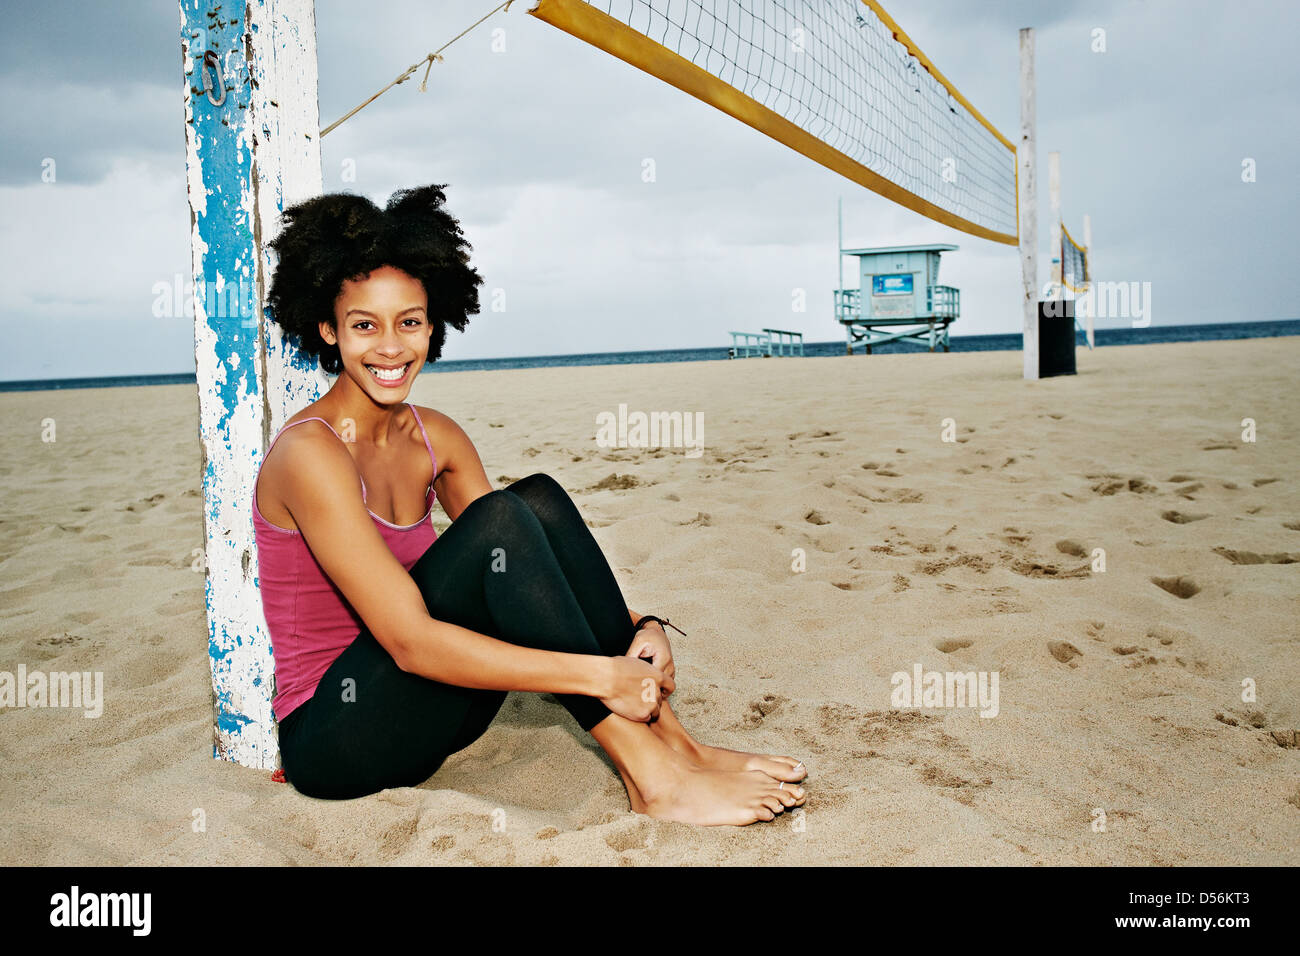 Razza mista donna seduta dalla rete da pallavolo sulla spiaggia Foto Stock